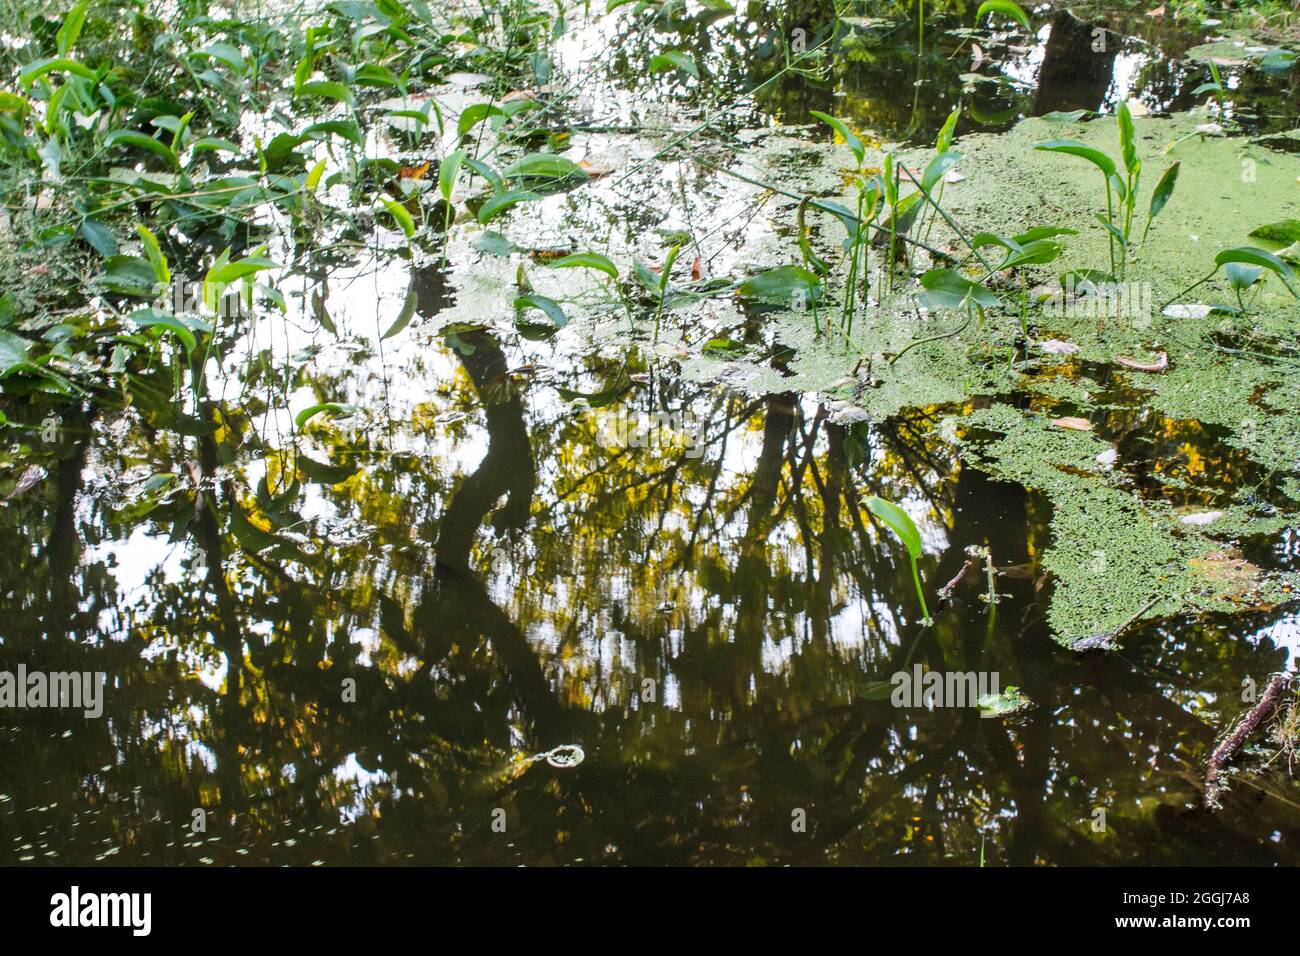 Grüne Vegetation auf reflektierendem Wasser, in einem öffentlichen Park aus Bukarest, Rumänien. Stockfoto